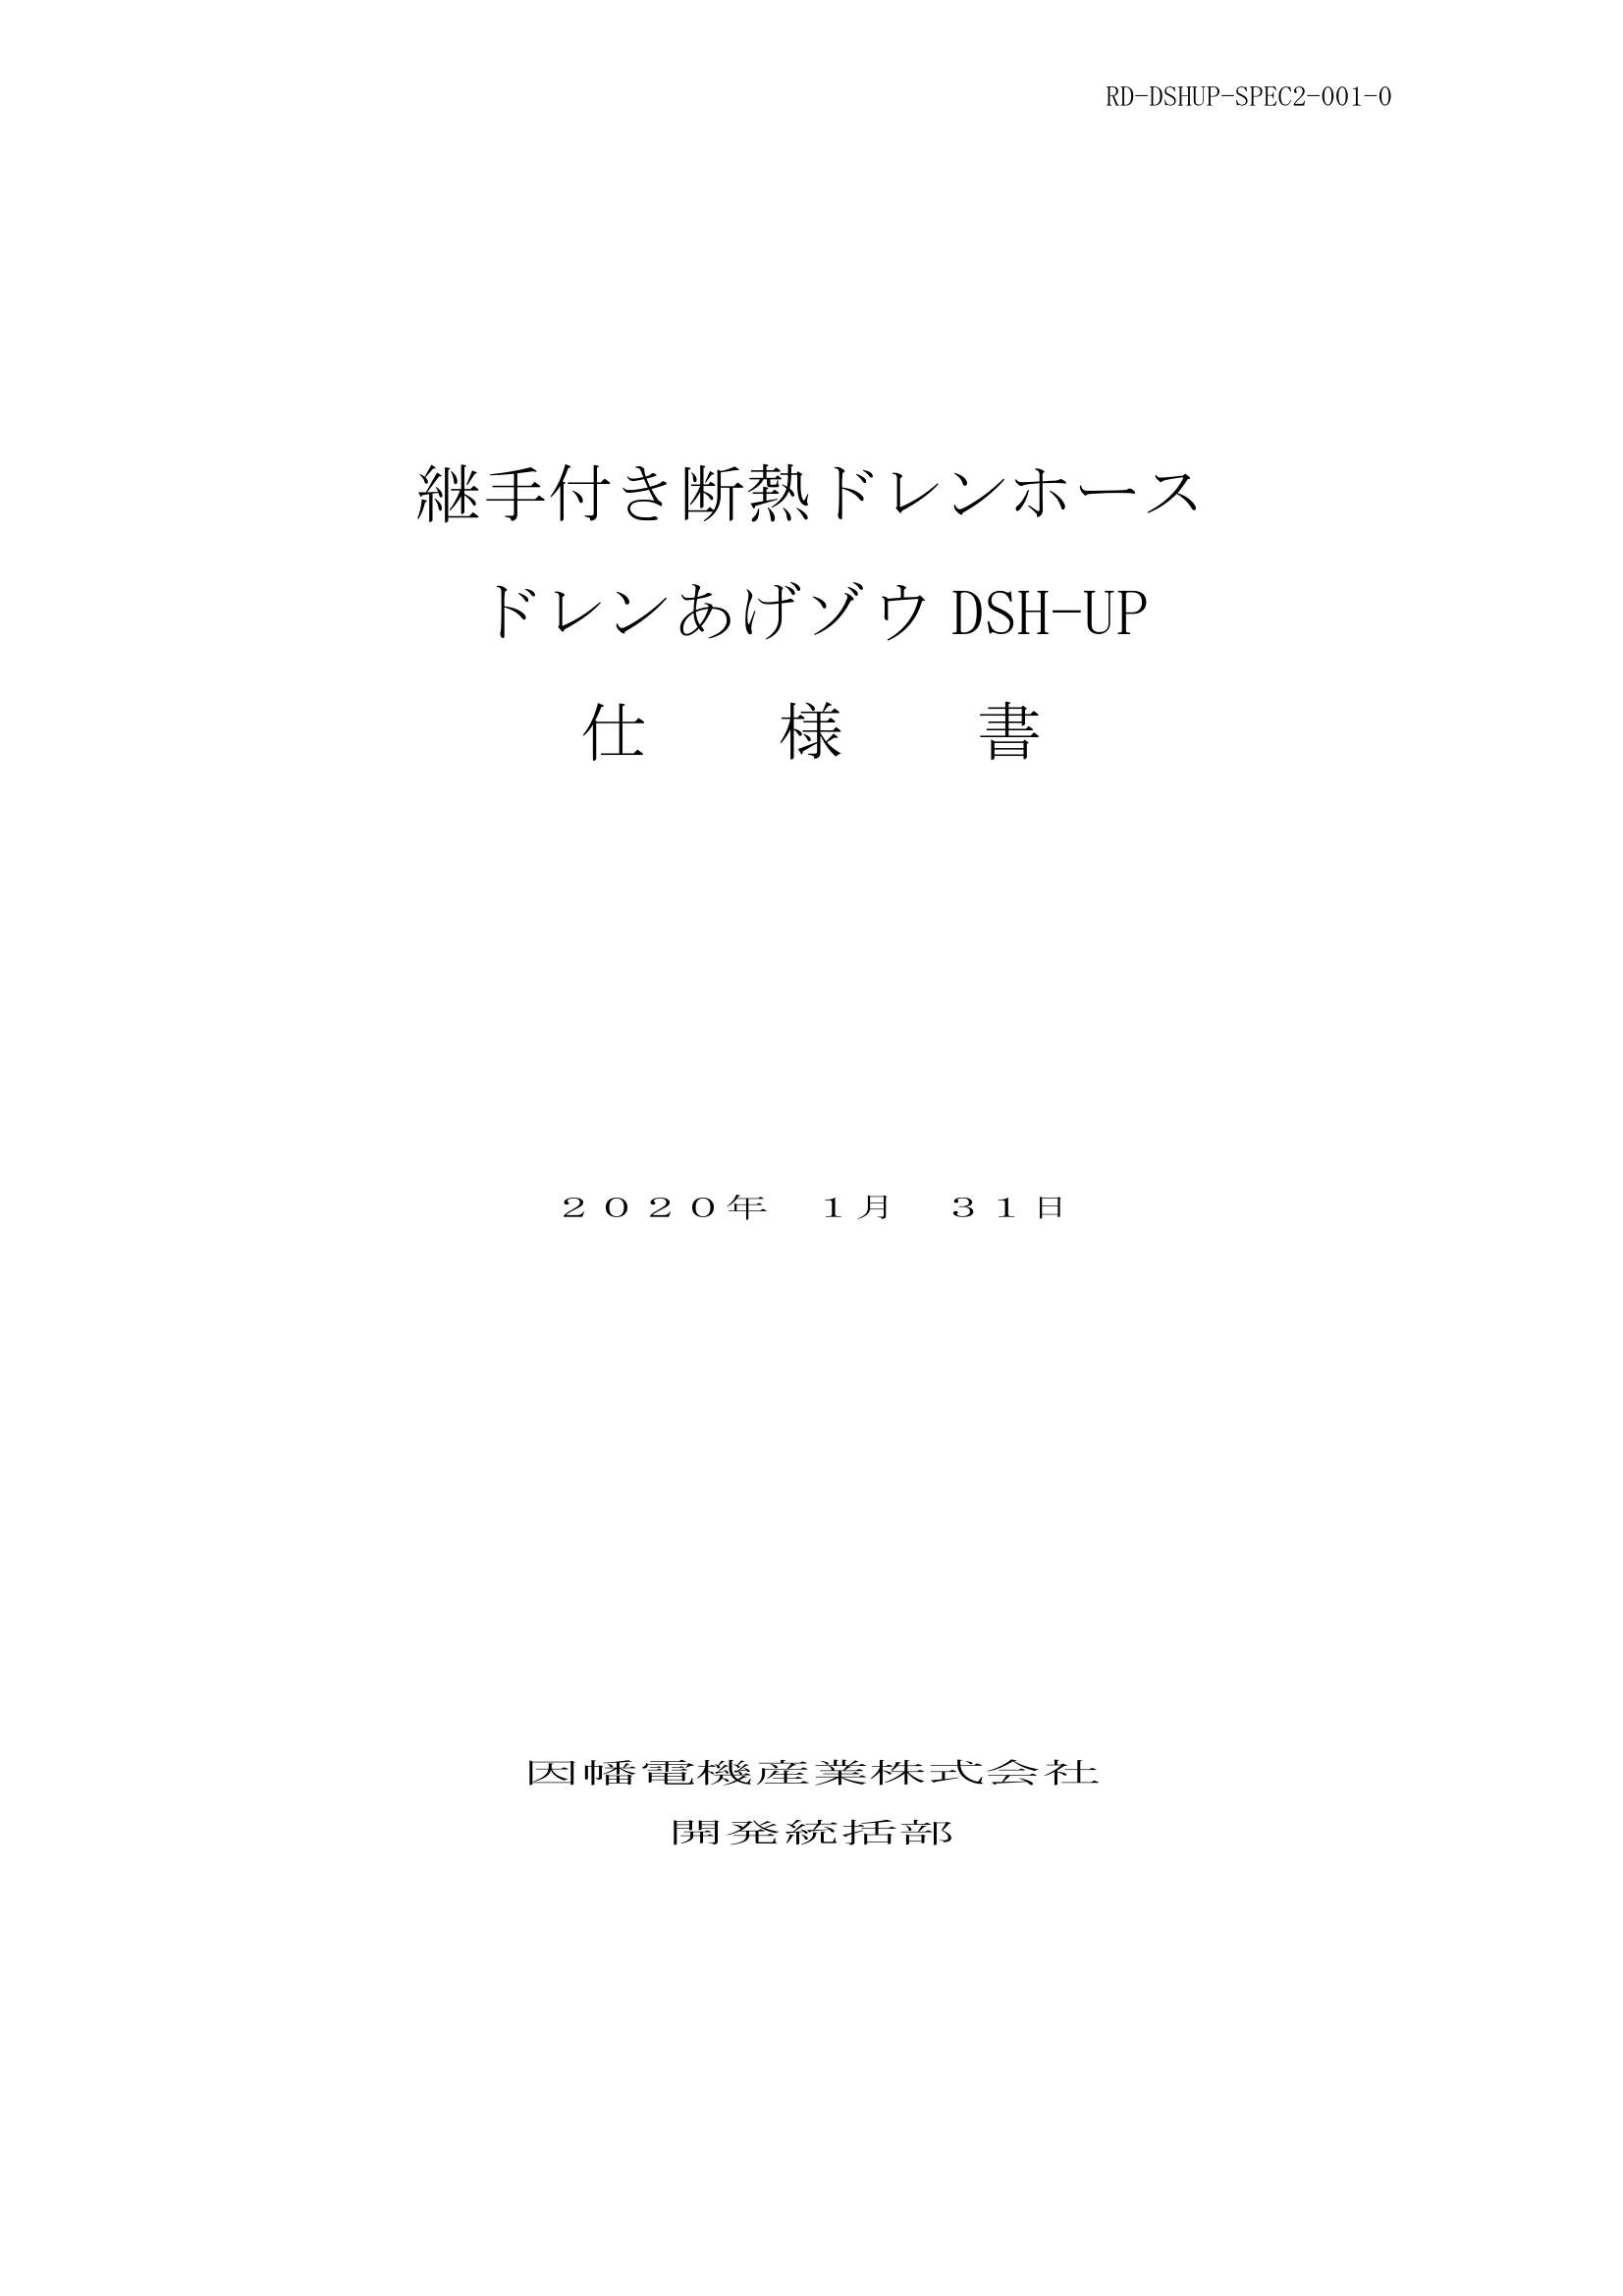 DSH-UP_仕様書_20200131.pdf